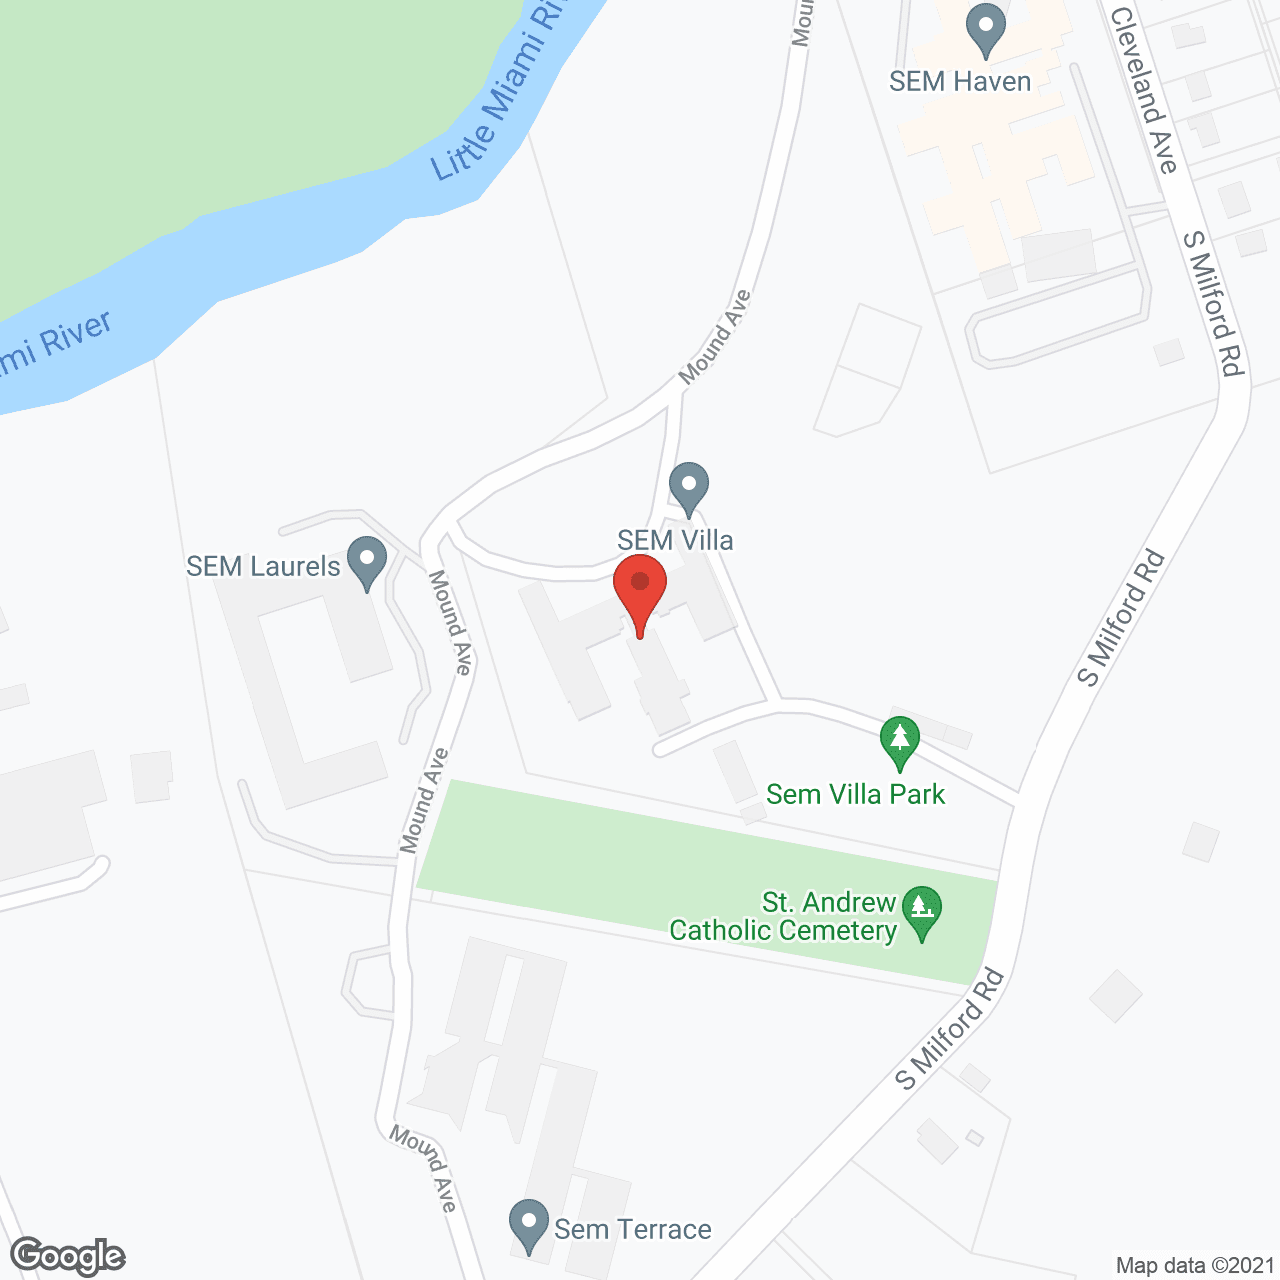 SEM Villa in google map